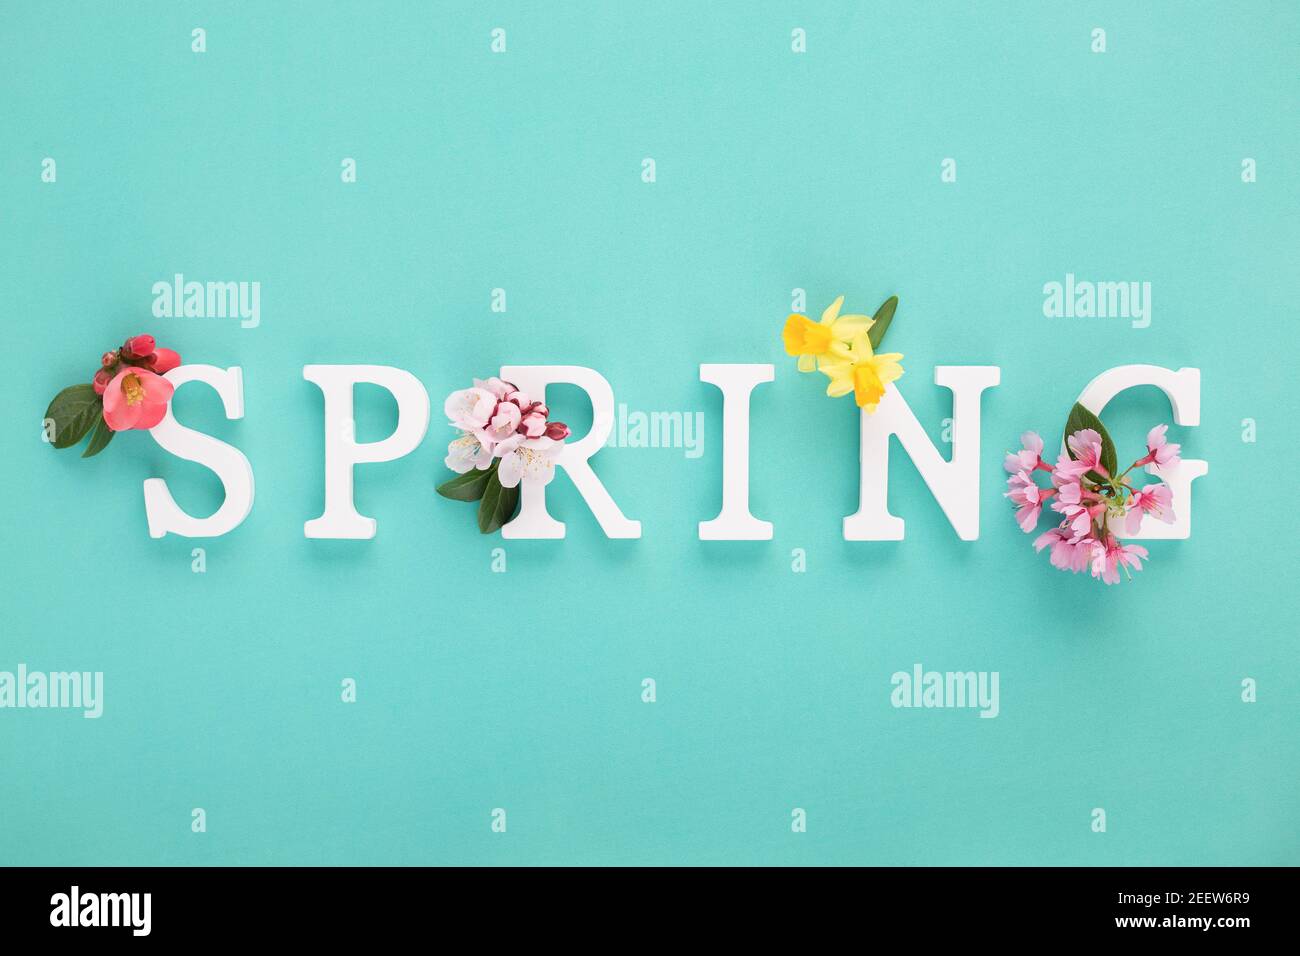 Weiße Holzbuchstaben bilden eine Frühlingsanordnung von frischen Frühlingsblumen auf blauem tiffany Hintergrund. Minimalkonzept. Flach liegend. Stockfoto